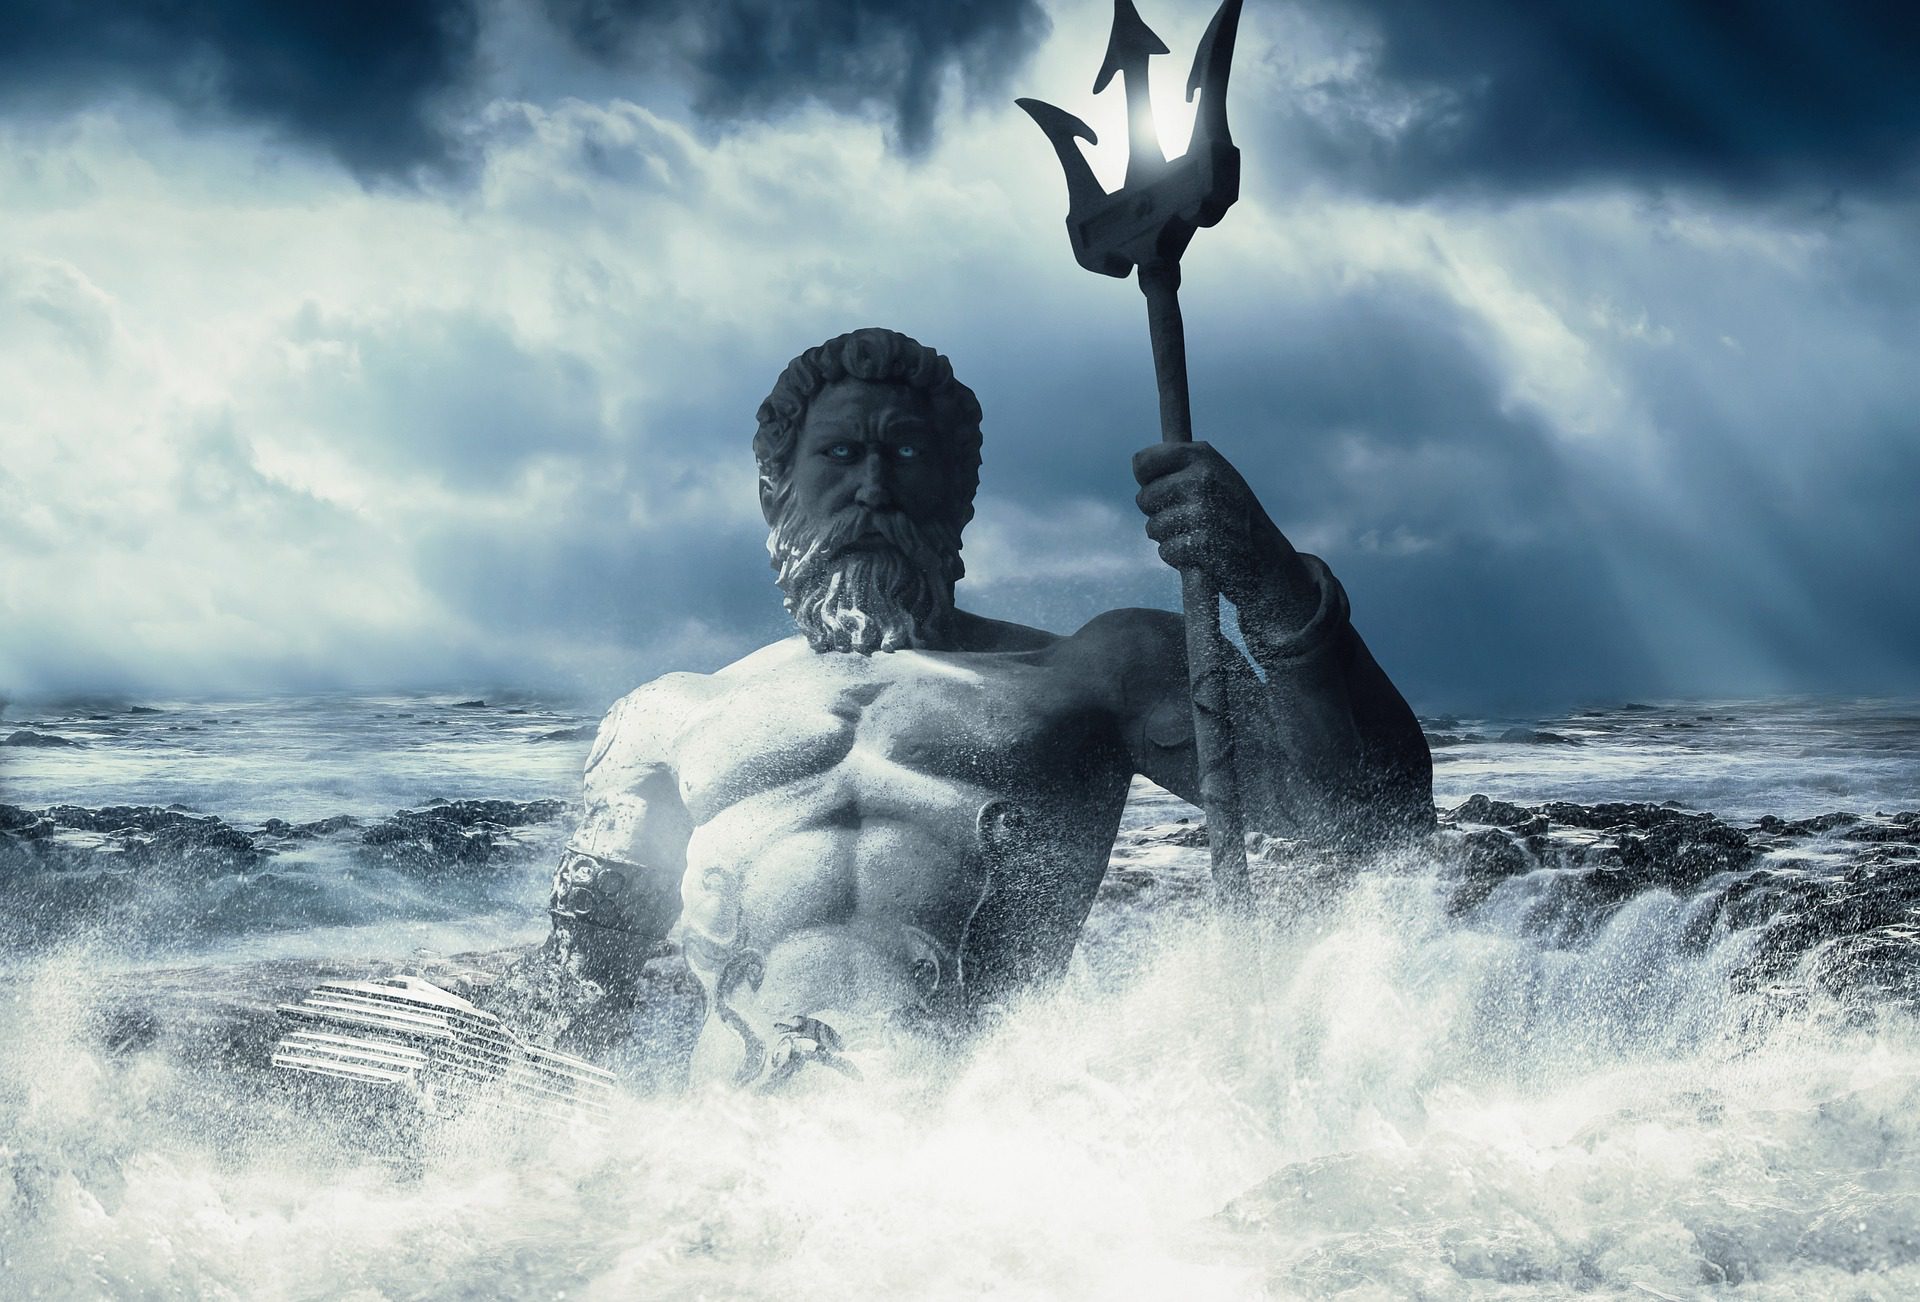  Interessante feiten over Poseidon, god van de zee